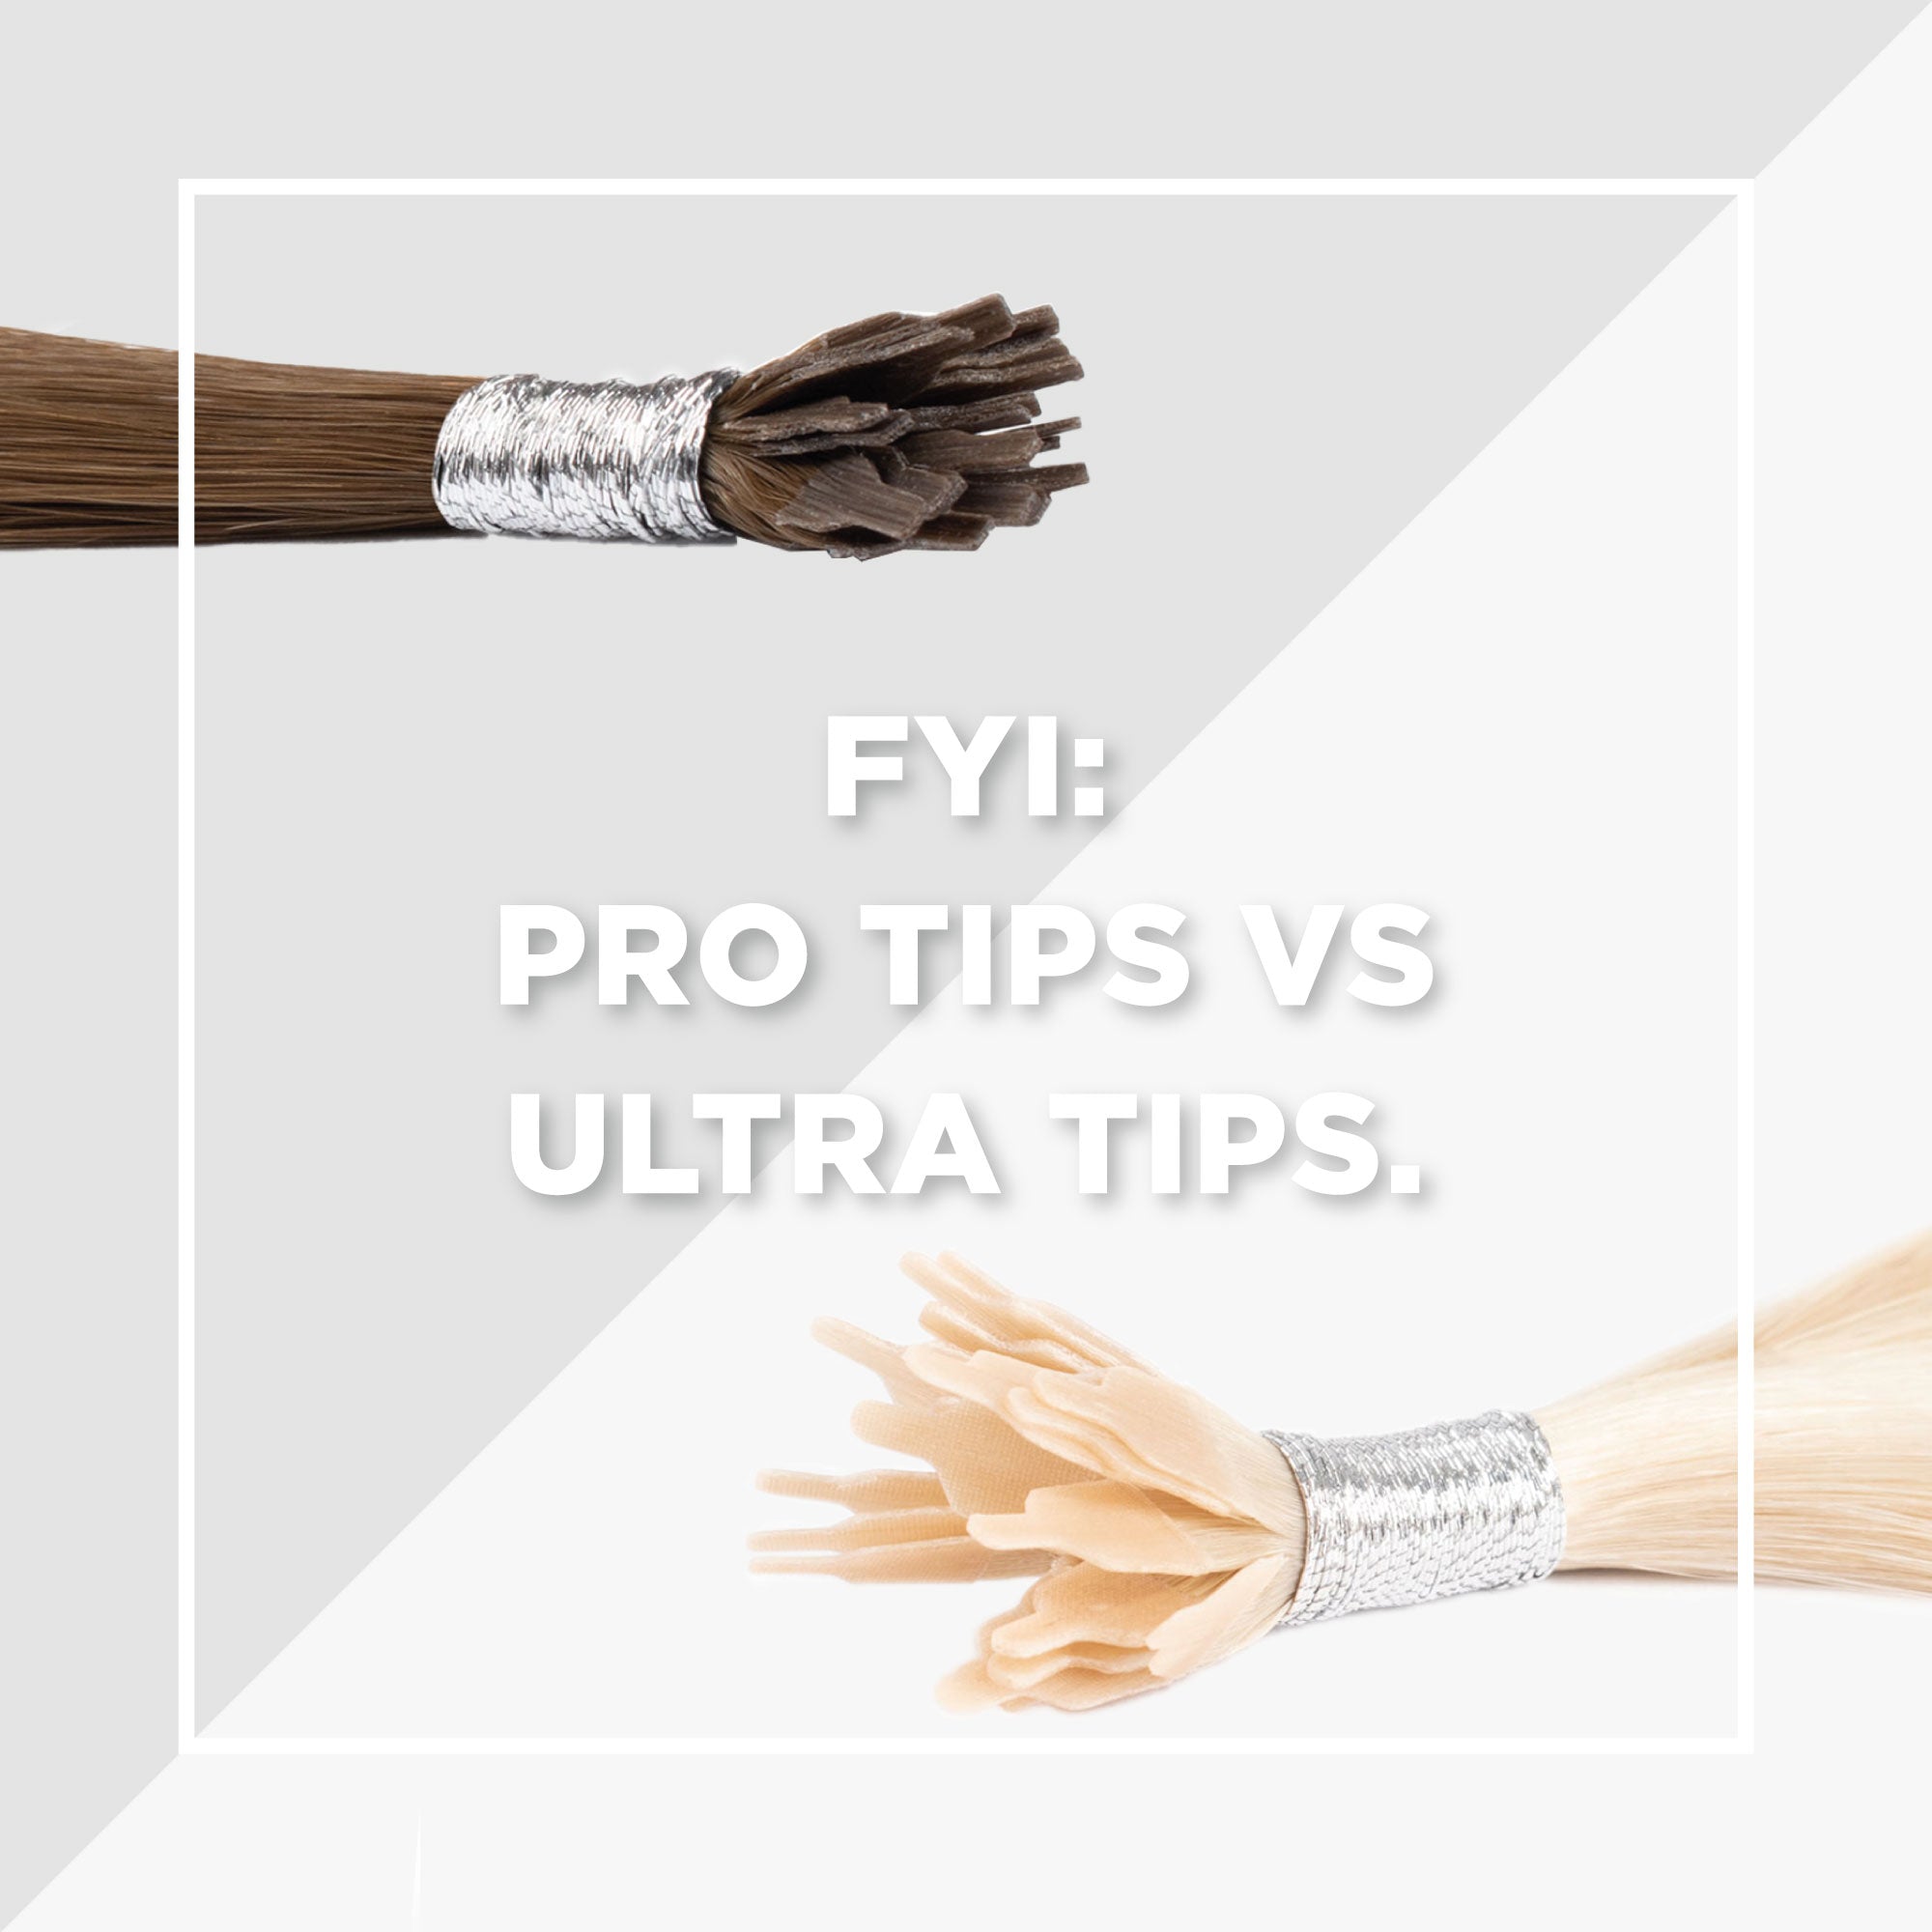 FYI: Pro Tips vs Ultra Tips